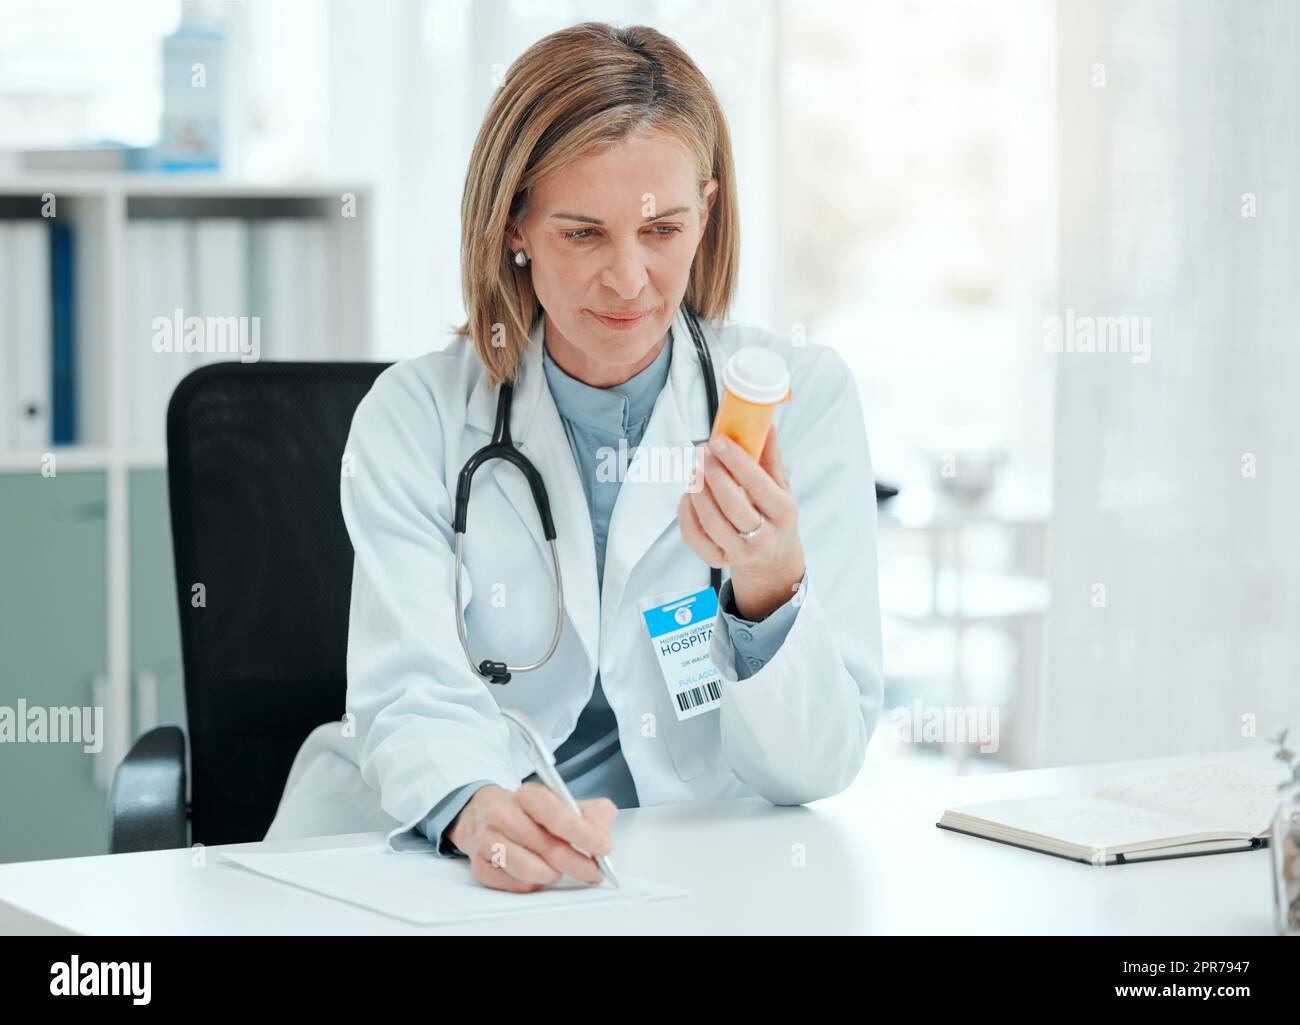 Dies sind die besten Pillen für meinen Patienten. Aufnahme einer reifen Ärztin, die allein in ihrer Klinik sitzt und Notizen schreibt, während sie eine Flasche Pillen in der Hand hält. Stockfoto